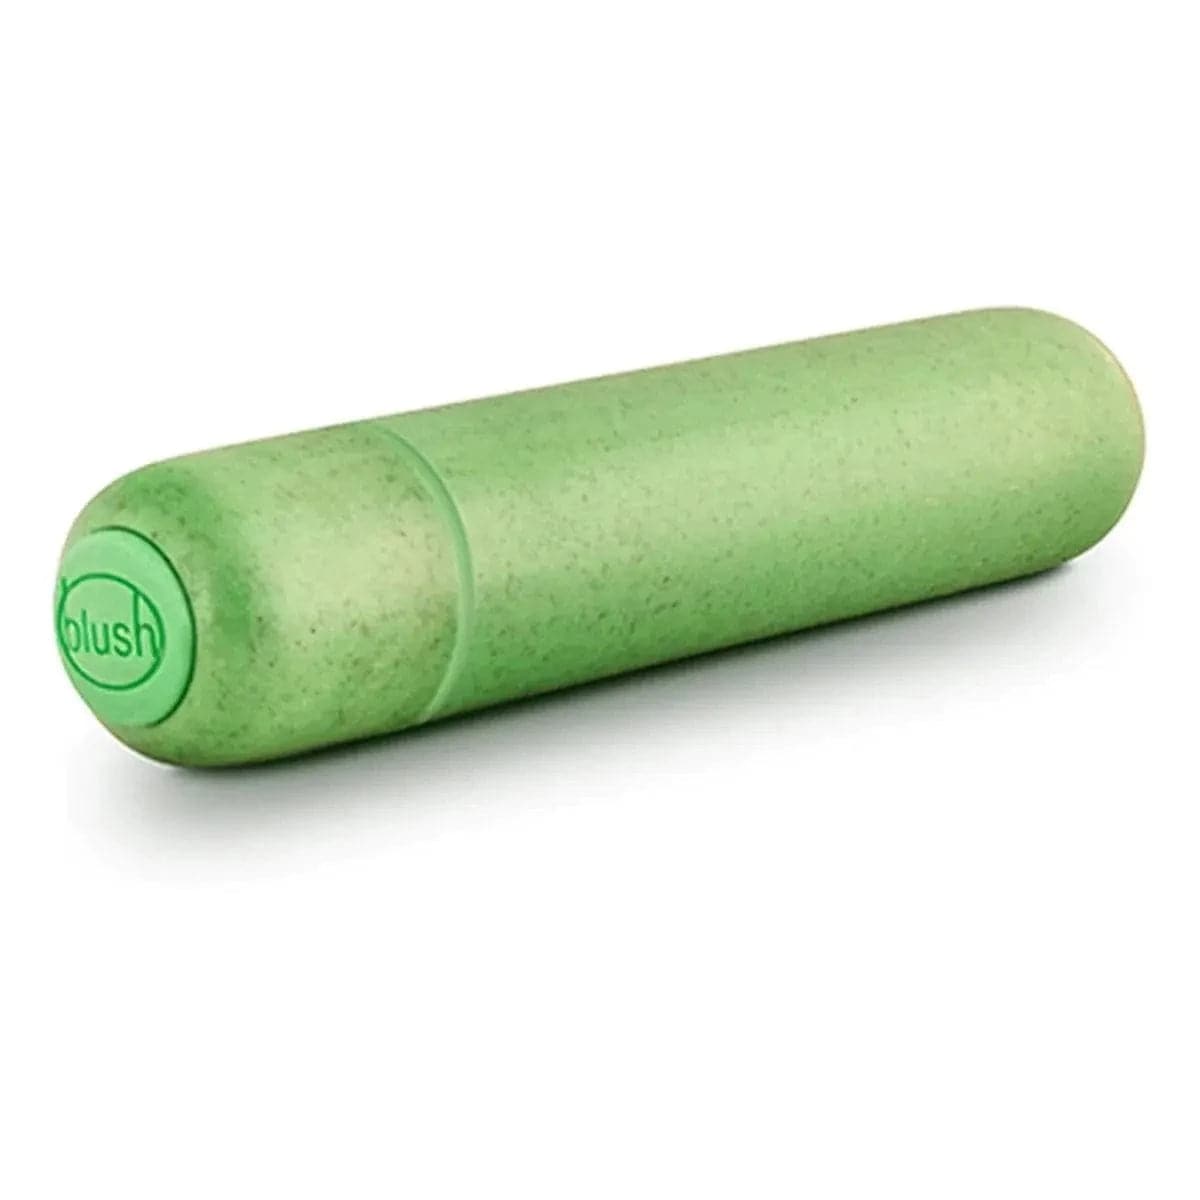 Bala Vibratória Gaia Eco Verde (Biodegradável), 8.2cm Ø1.8cm, 1vibração  Blush Novelties   